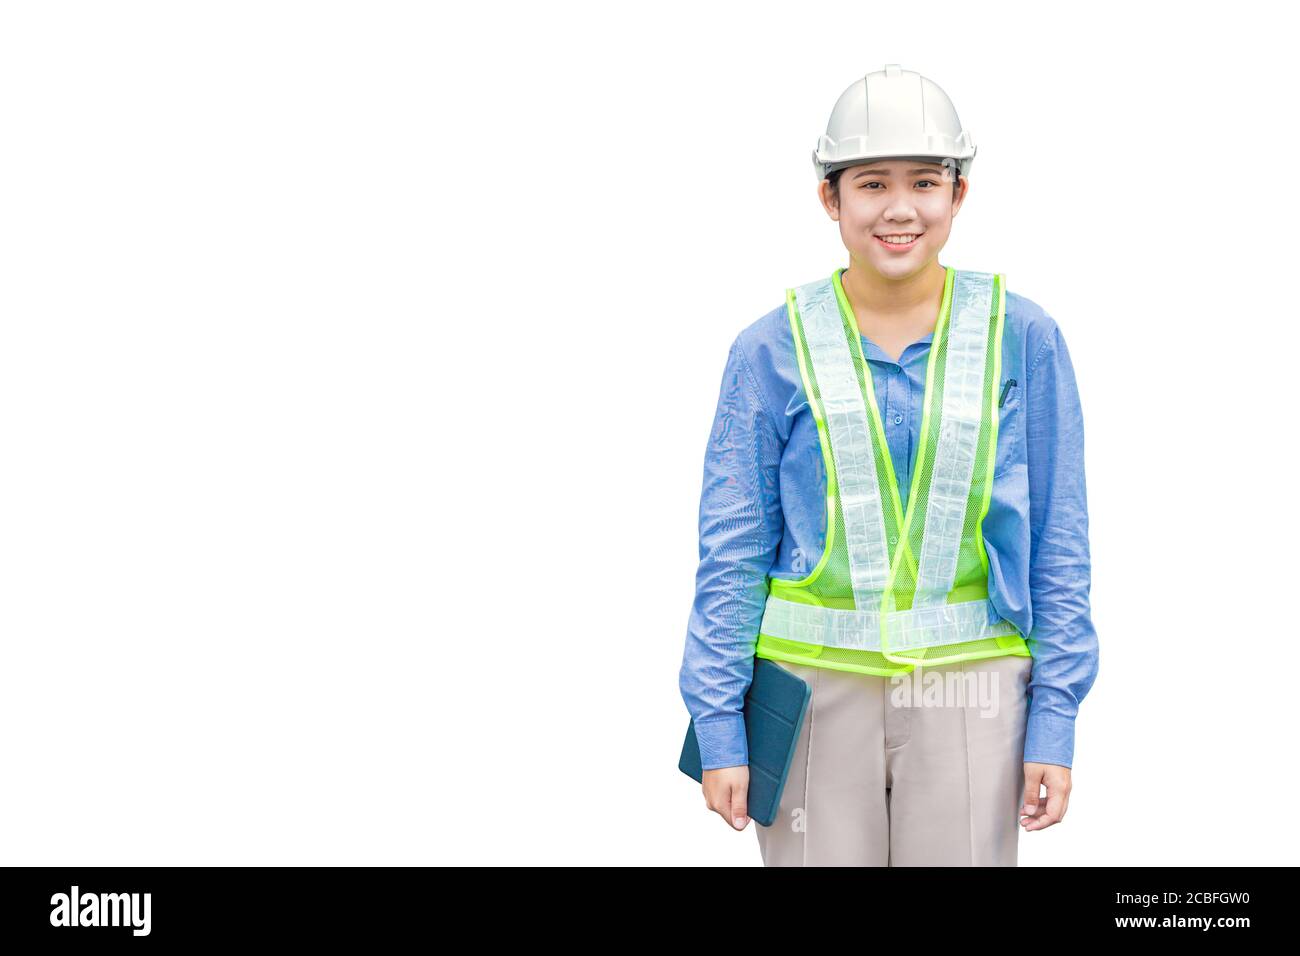 Bauarbeiter Weste für Kinder Sicherheitsweste Warnweste mit Bauarbeiterhelm